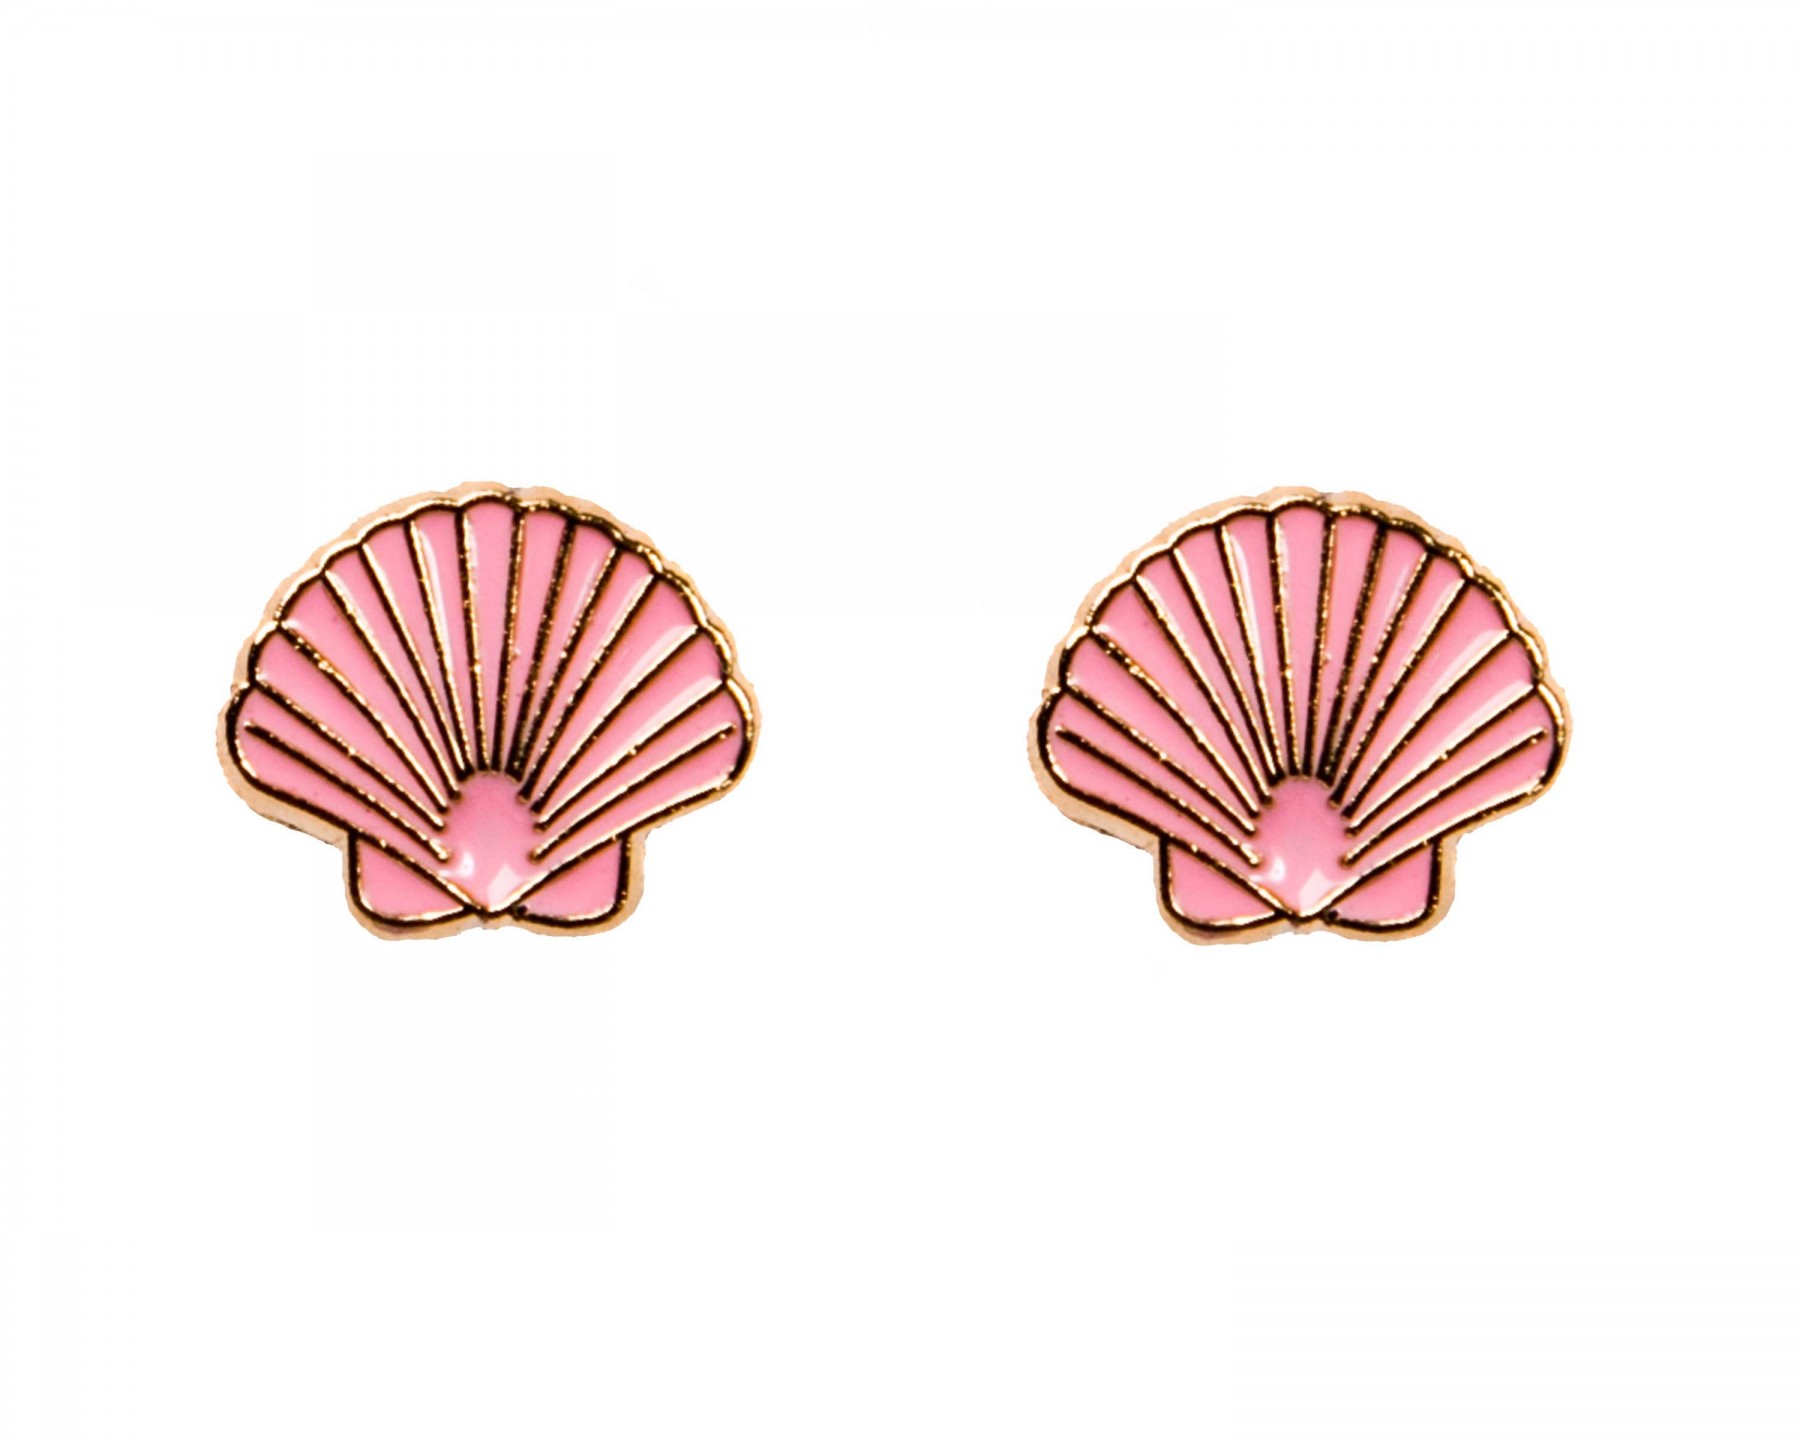 Joan shell earrings - pink